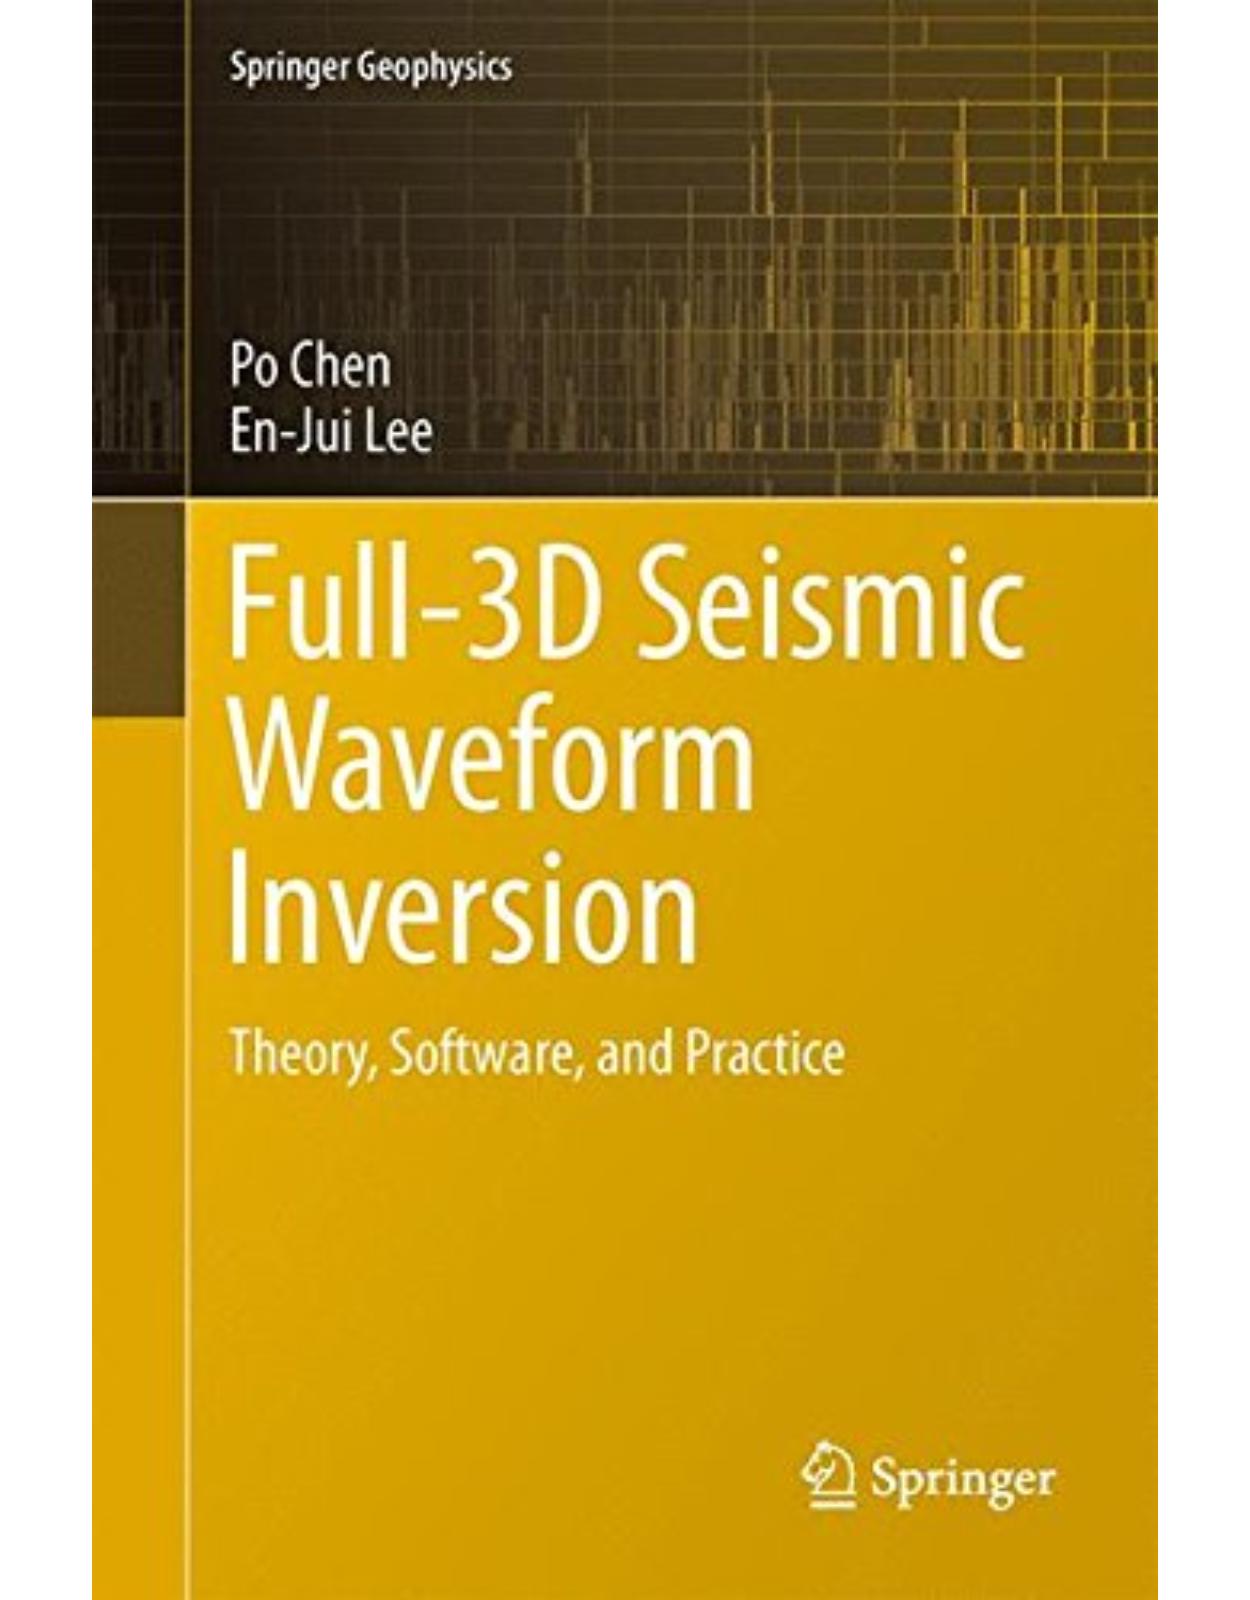 Full-3D Seismic Waveform Inversion